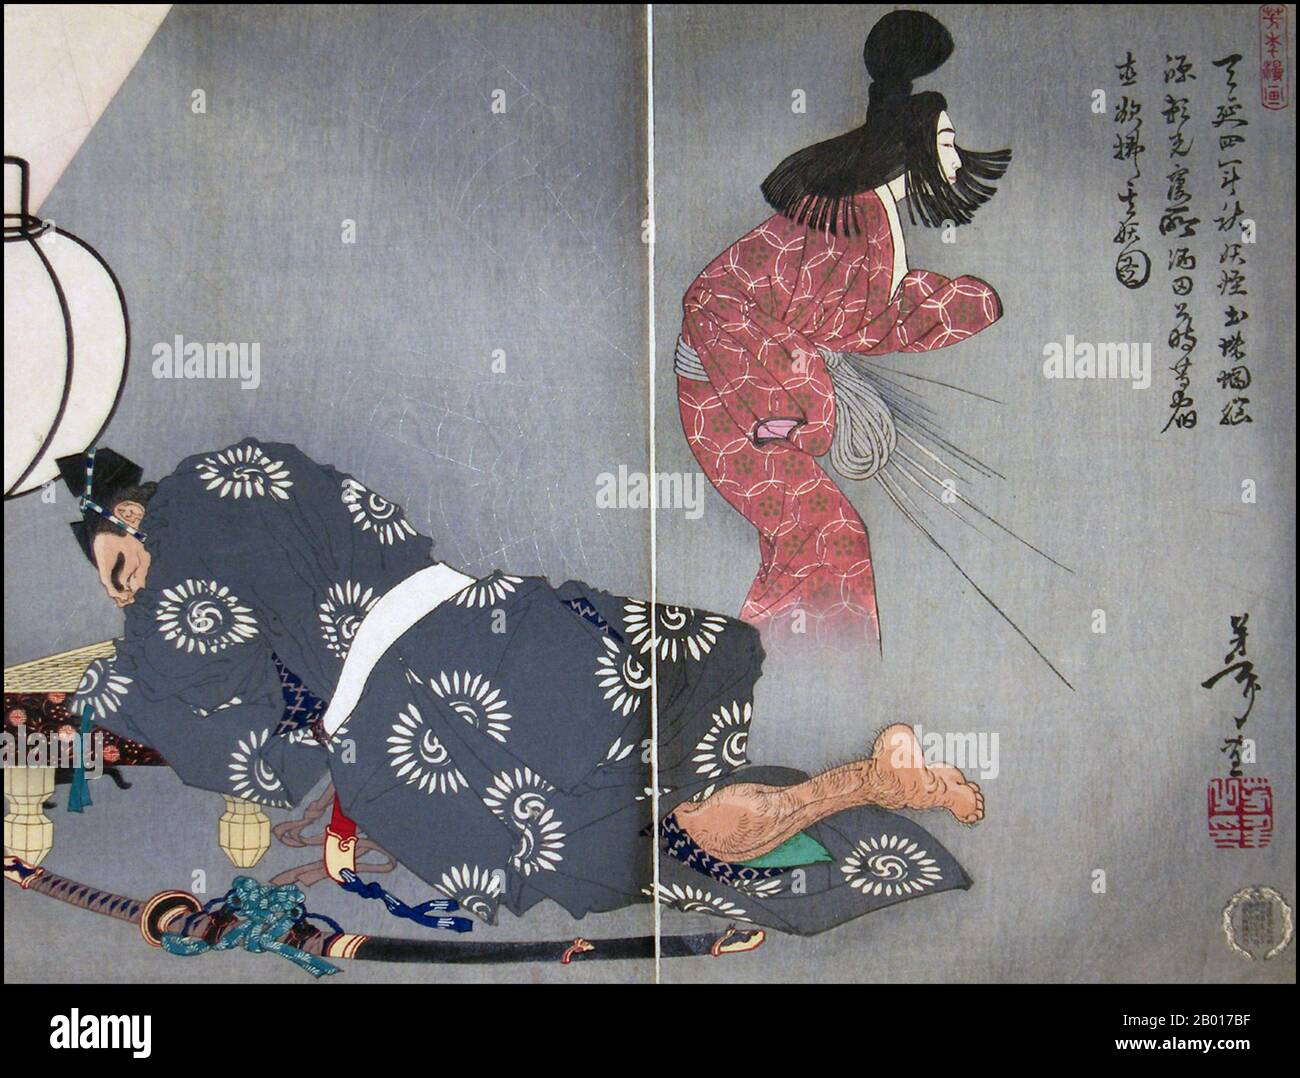 Japan: „Bild des Erdspinnen-Monsters, das Sakata Kintoki und andere während der Nachtwache in den Kammern von Minamoto Yorimitsu im Herbst 976 mental quält“. Ukiyo-e Holzschnitt-Diptychon von Tsukioka Yoshitoshi (1839. - 9. Juni 1892), 1886. Tsukioka Yoshitoshi, auch Taiso Yoshitoshi genannt, war ein japanischer Künstler. Er ist weithin als der letzte große Meister des japanischen Holzschnitts Ukiyo-e anerkannt. Er gilt zudem als einer der größten Innovatoren der Form. Seine Karriere umfasste zwei Epochen – die letzten Jahre des feudalen Japans und die ersten Jahre des modernen Japans. Stockfoto